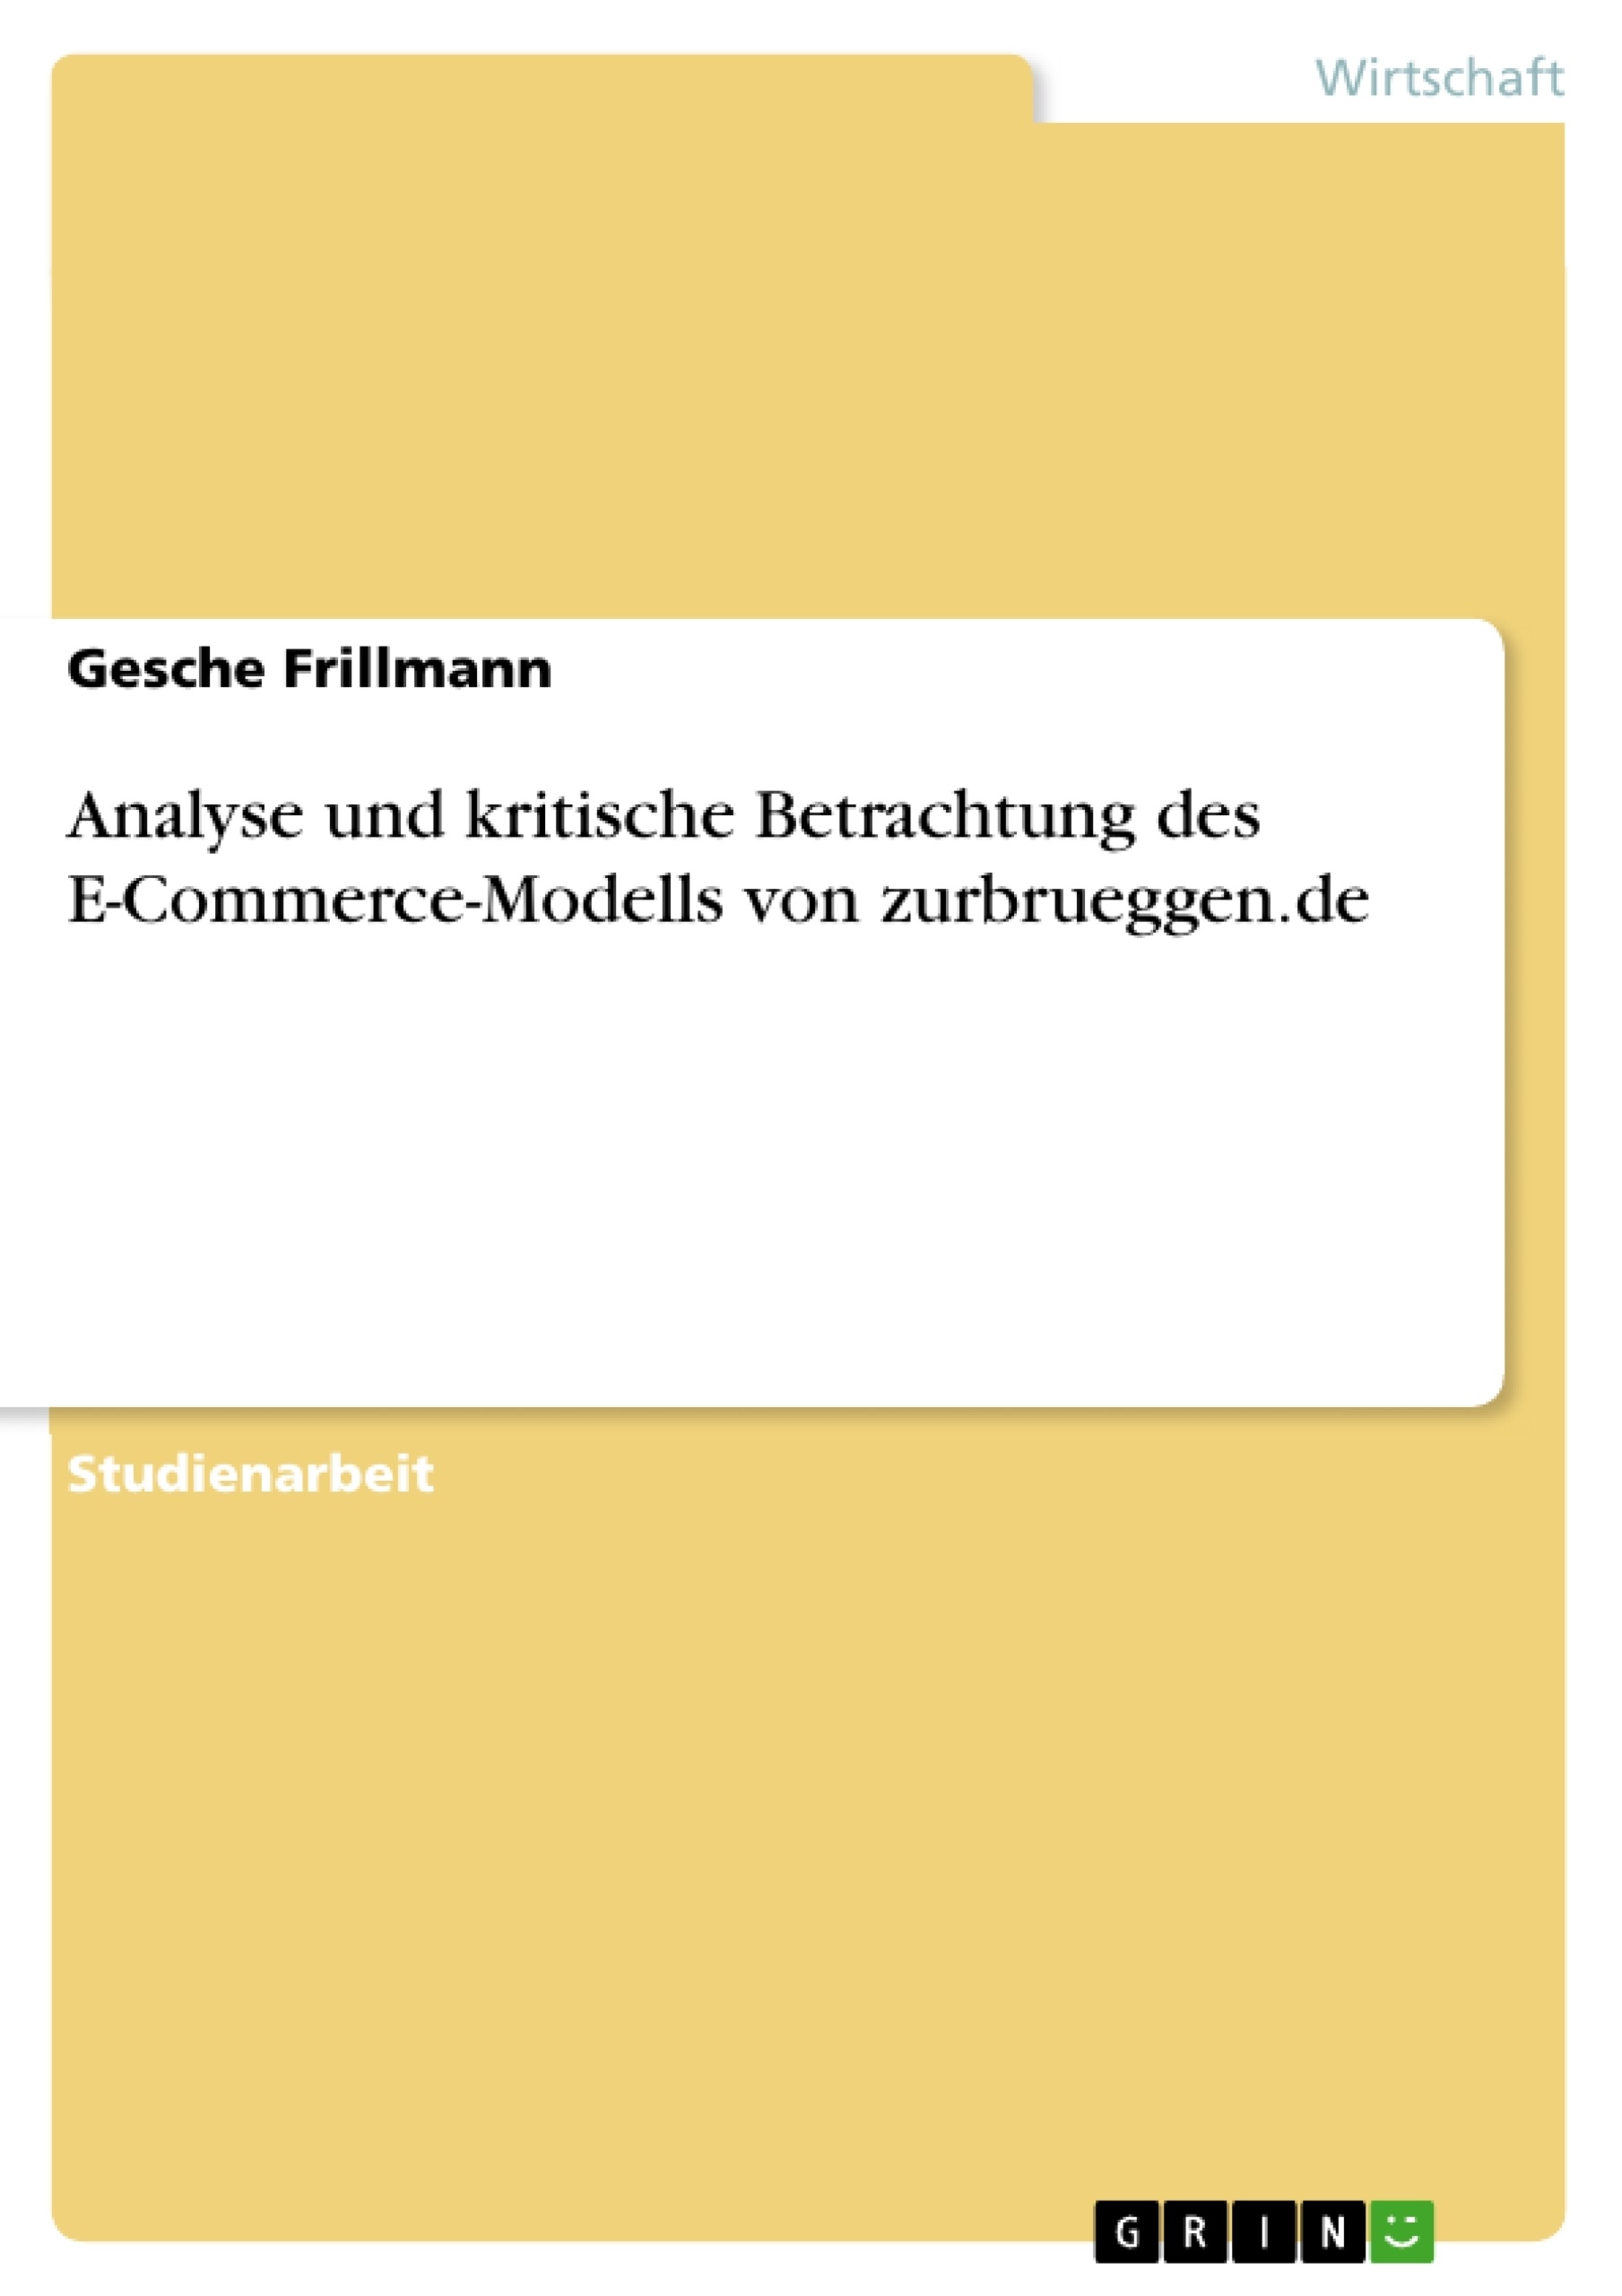 Titel: Analyse und kritische Betrachtung des E-Commerce-Modells von zurbrueggen.de